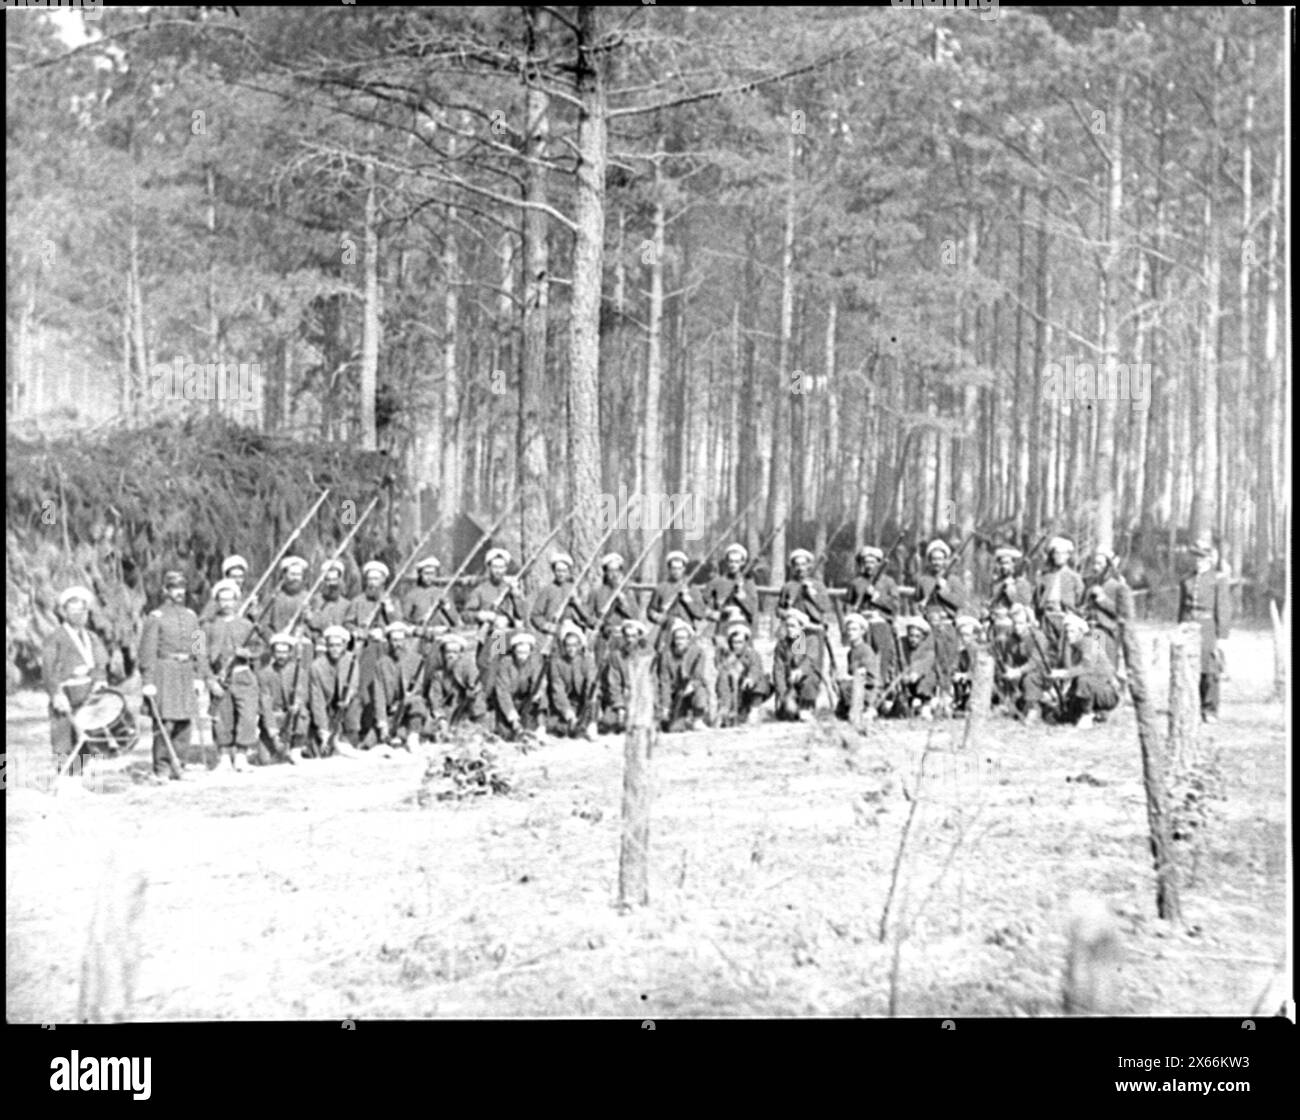 Petersburg, Va. Company F, 114th Pennsylvania Infantry (Zouaves) with fixed bayonets, Civil War Photographs 1861-1865 Stock Photo